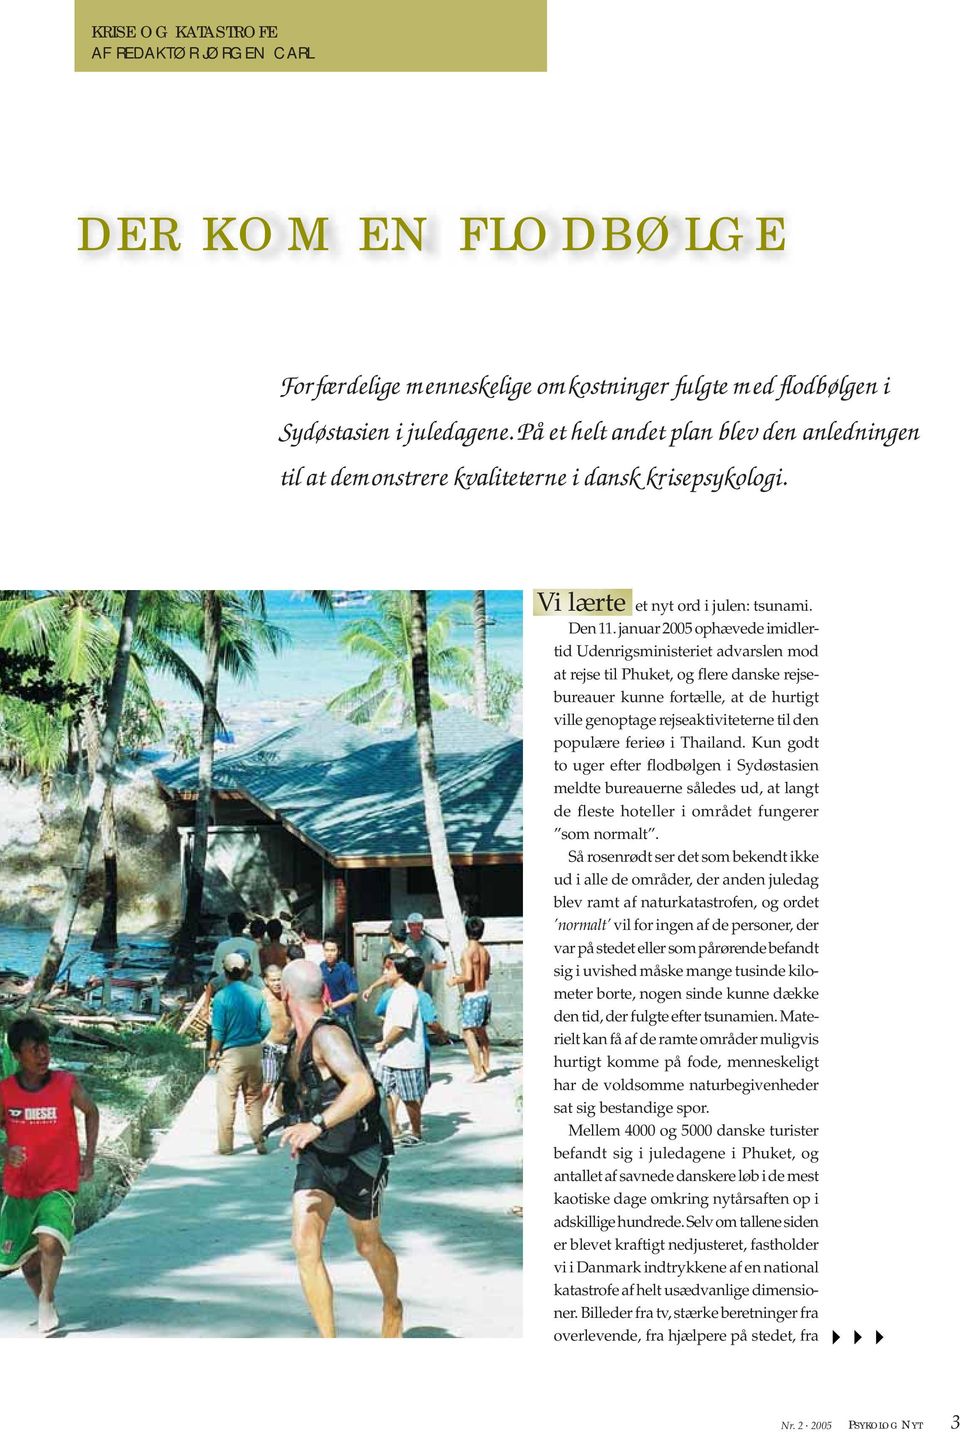 januar 2005 ophævede imidlertid Udenrigsministeriet advarslen mod at rejse til Phuket, og flere danske rejsebureauer kunne fortælle, at de hurtigt ville genoptage rejseaktiviteterne til den populære